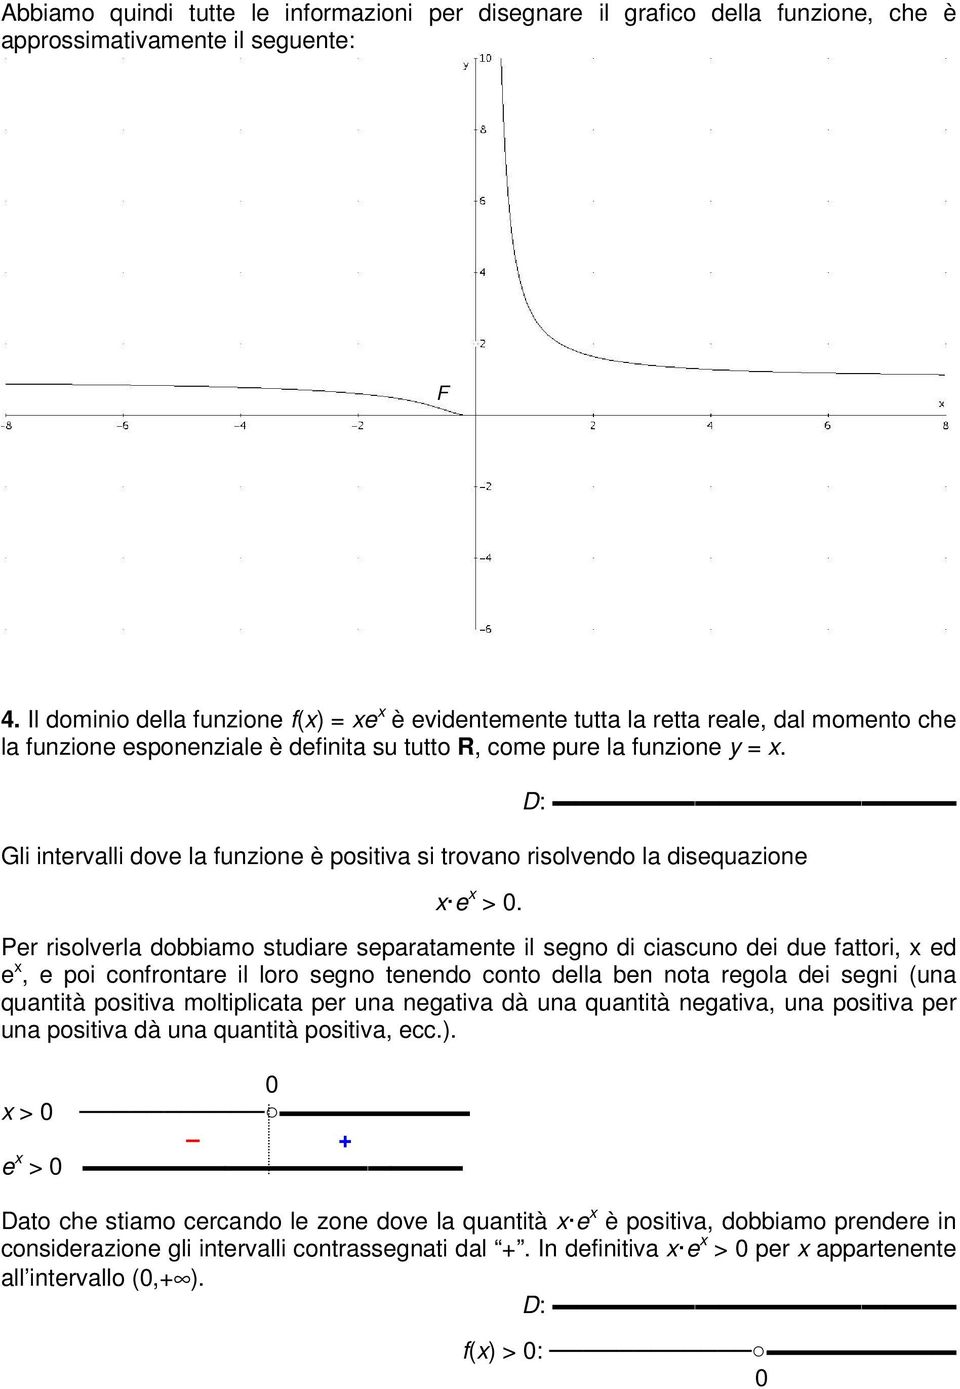 D: Gli intervalli dove la funzione è positiva si trovano risolvendo la disequazione e >.